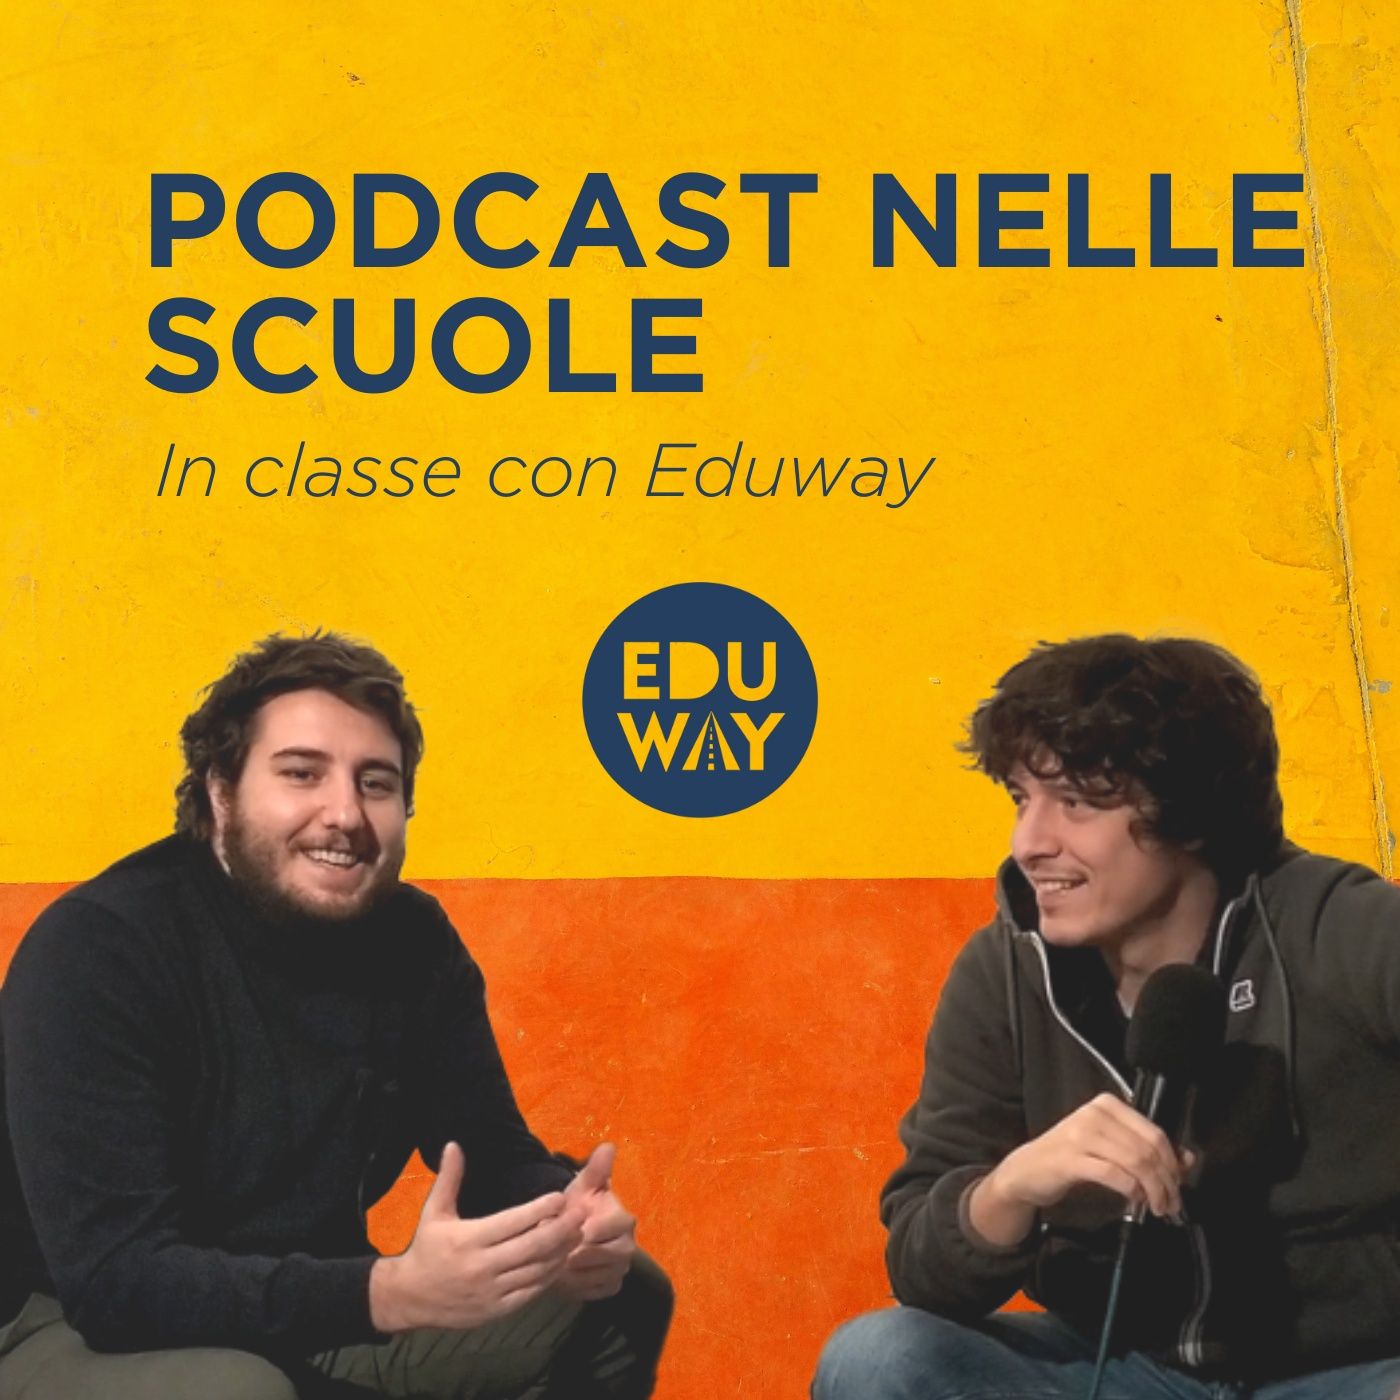 Podcast nelle scuole. In classe con Eduway